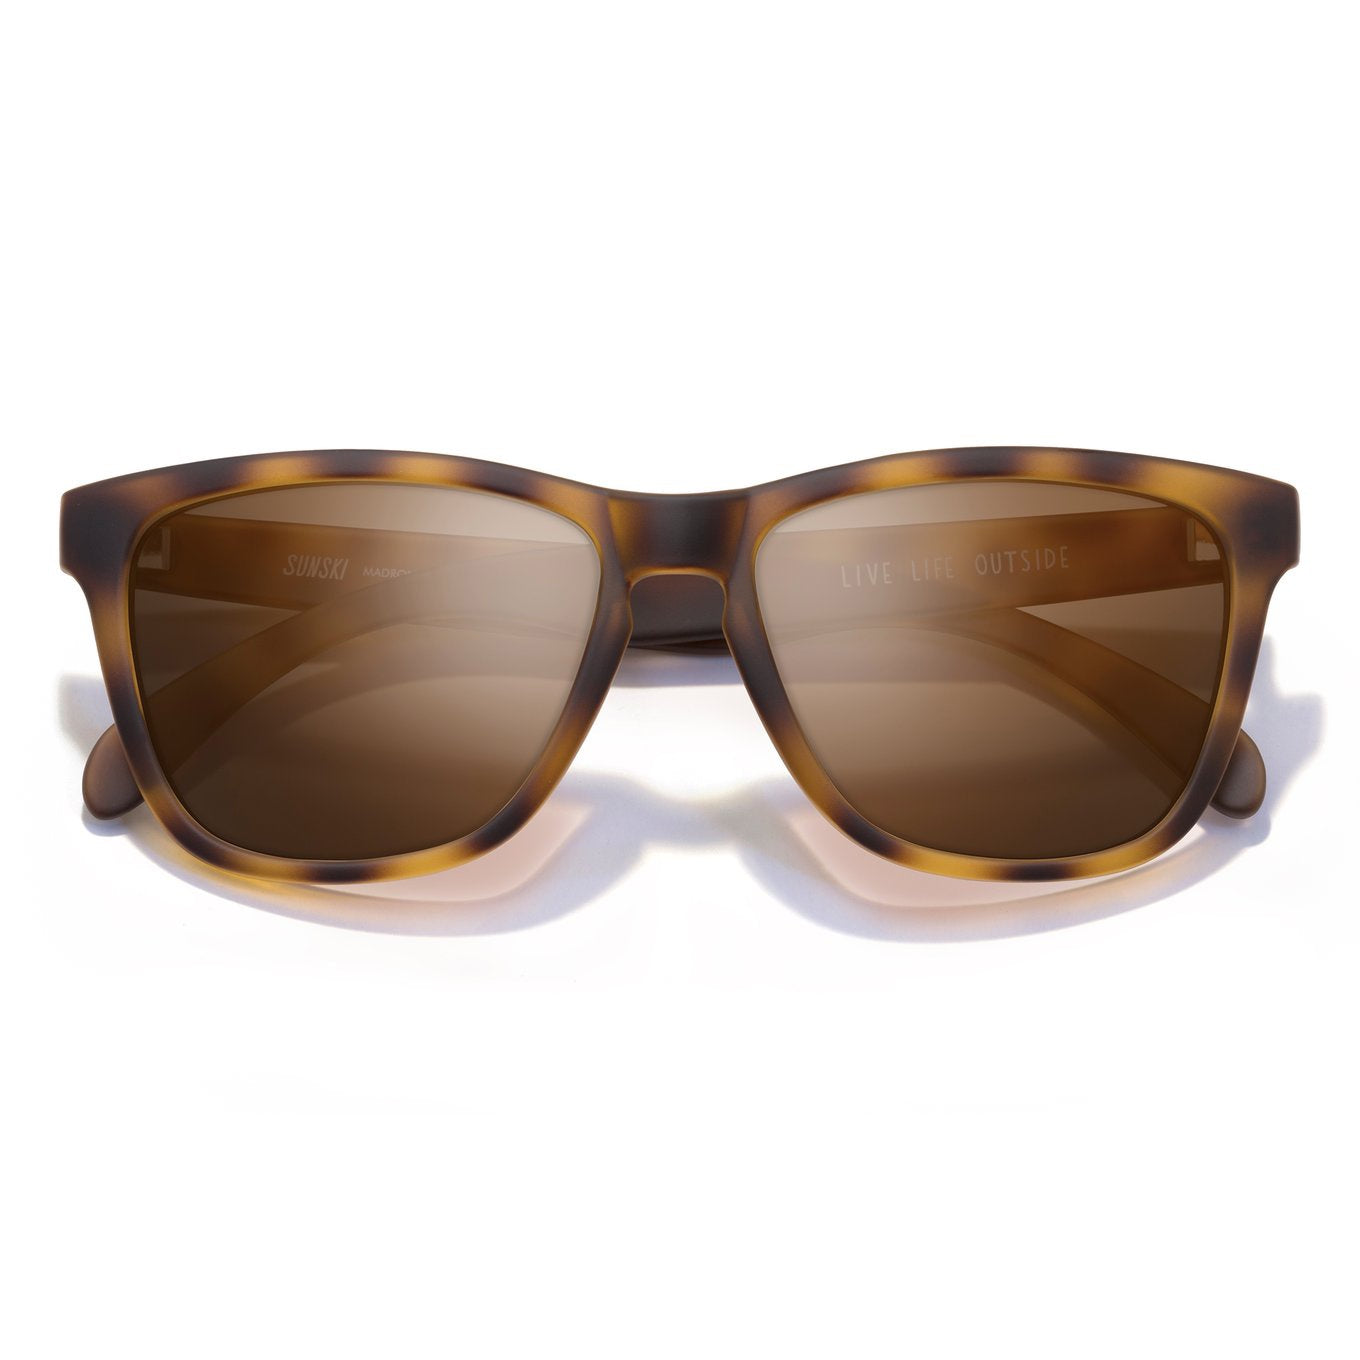 SUNSKI Sunglasses - Madrona Tortoise Brown